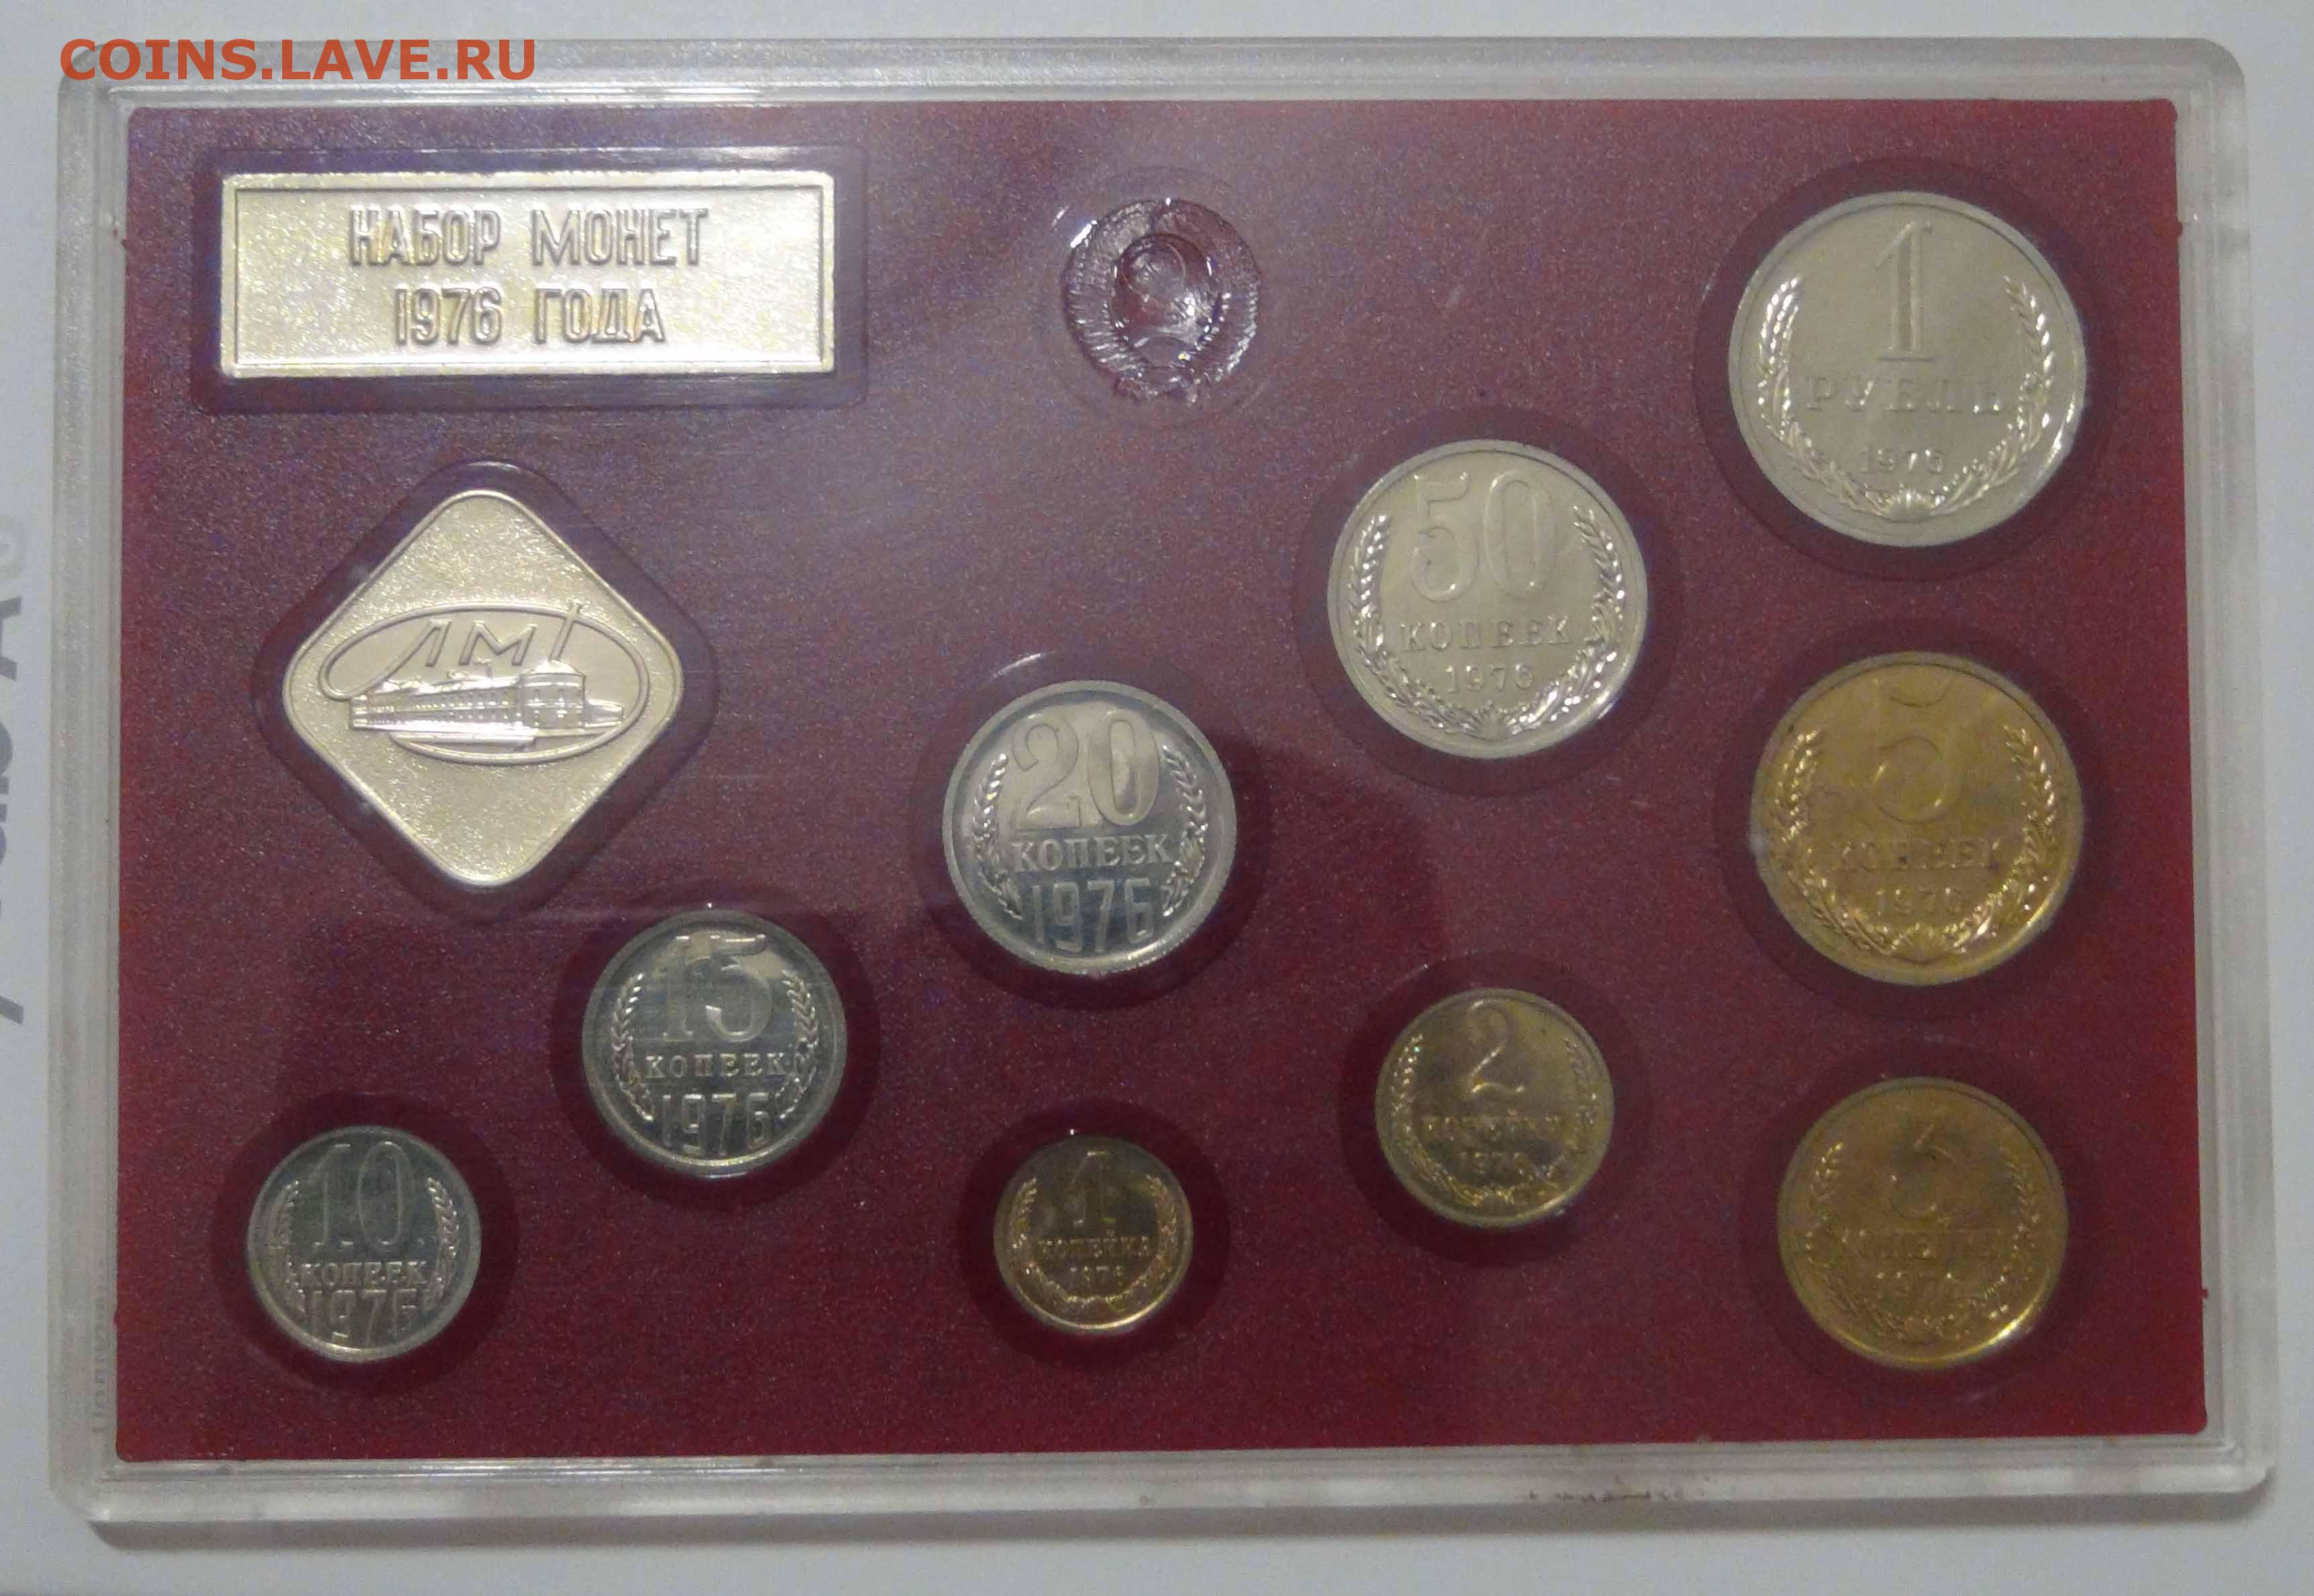 Рубль одной монетой 8. Набор монет СССР 1975г мягкий. Годовой набор монет 1961 СССР.